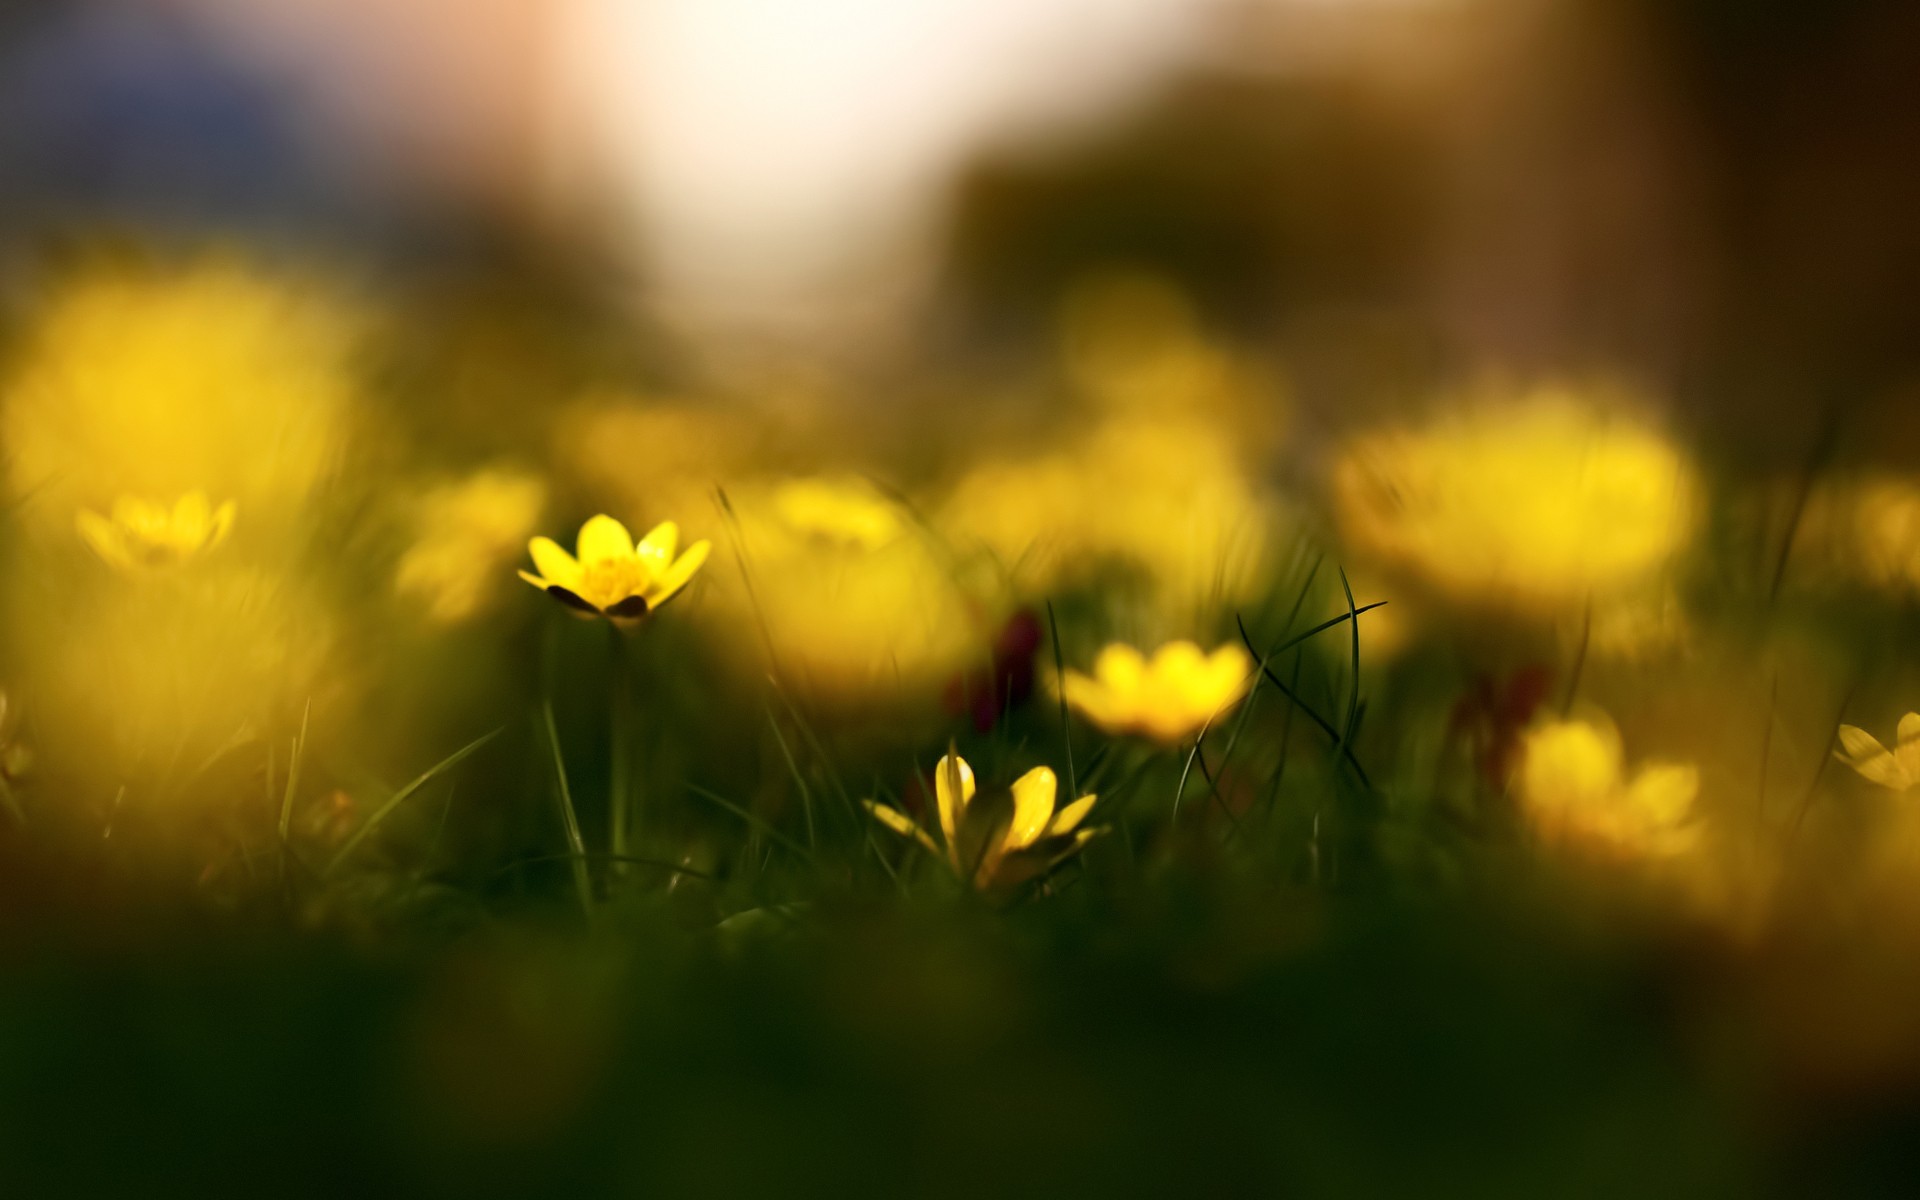 Yellow flower macro photo